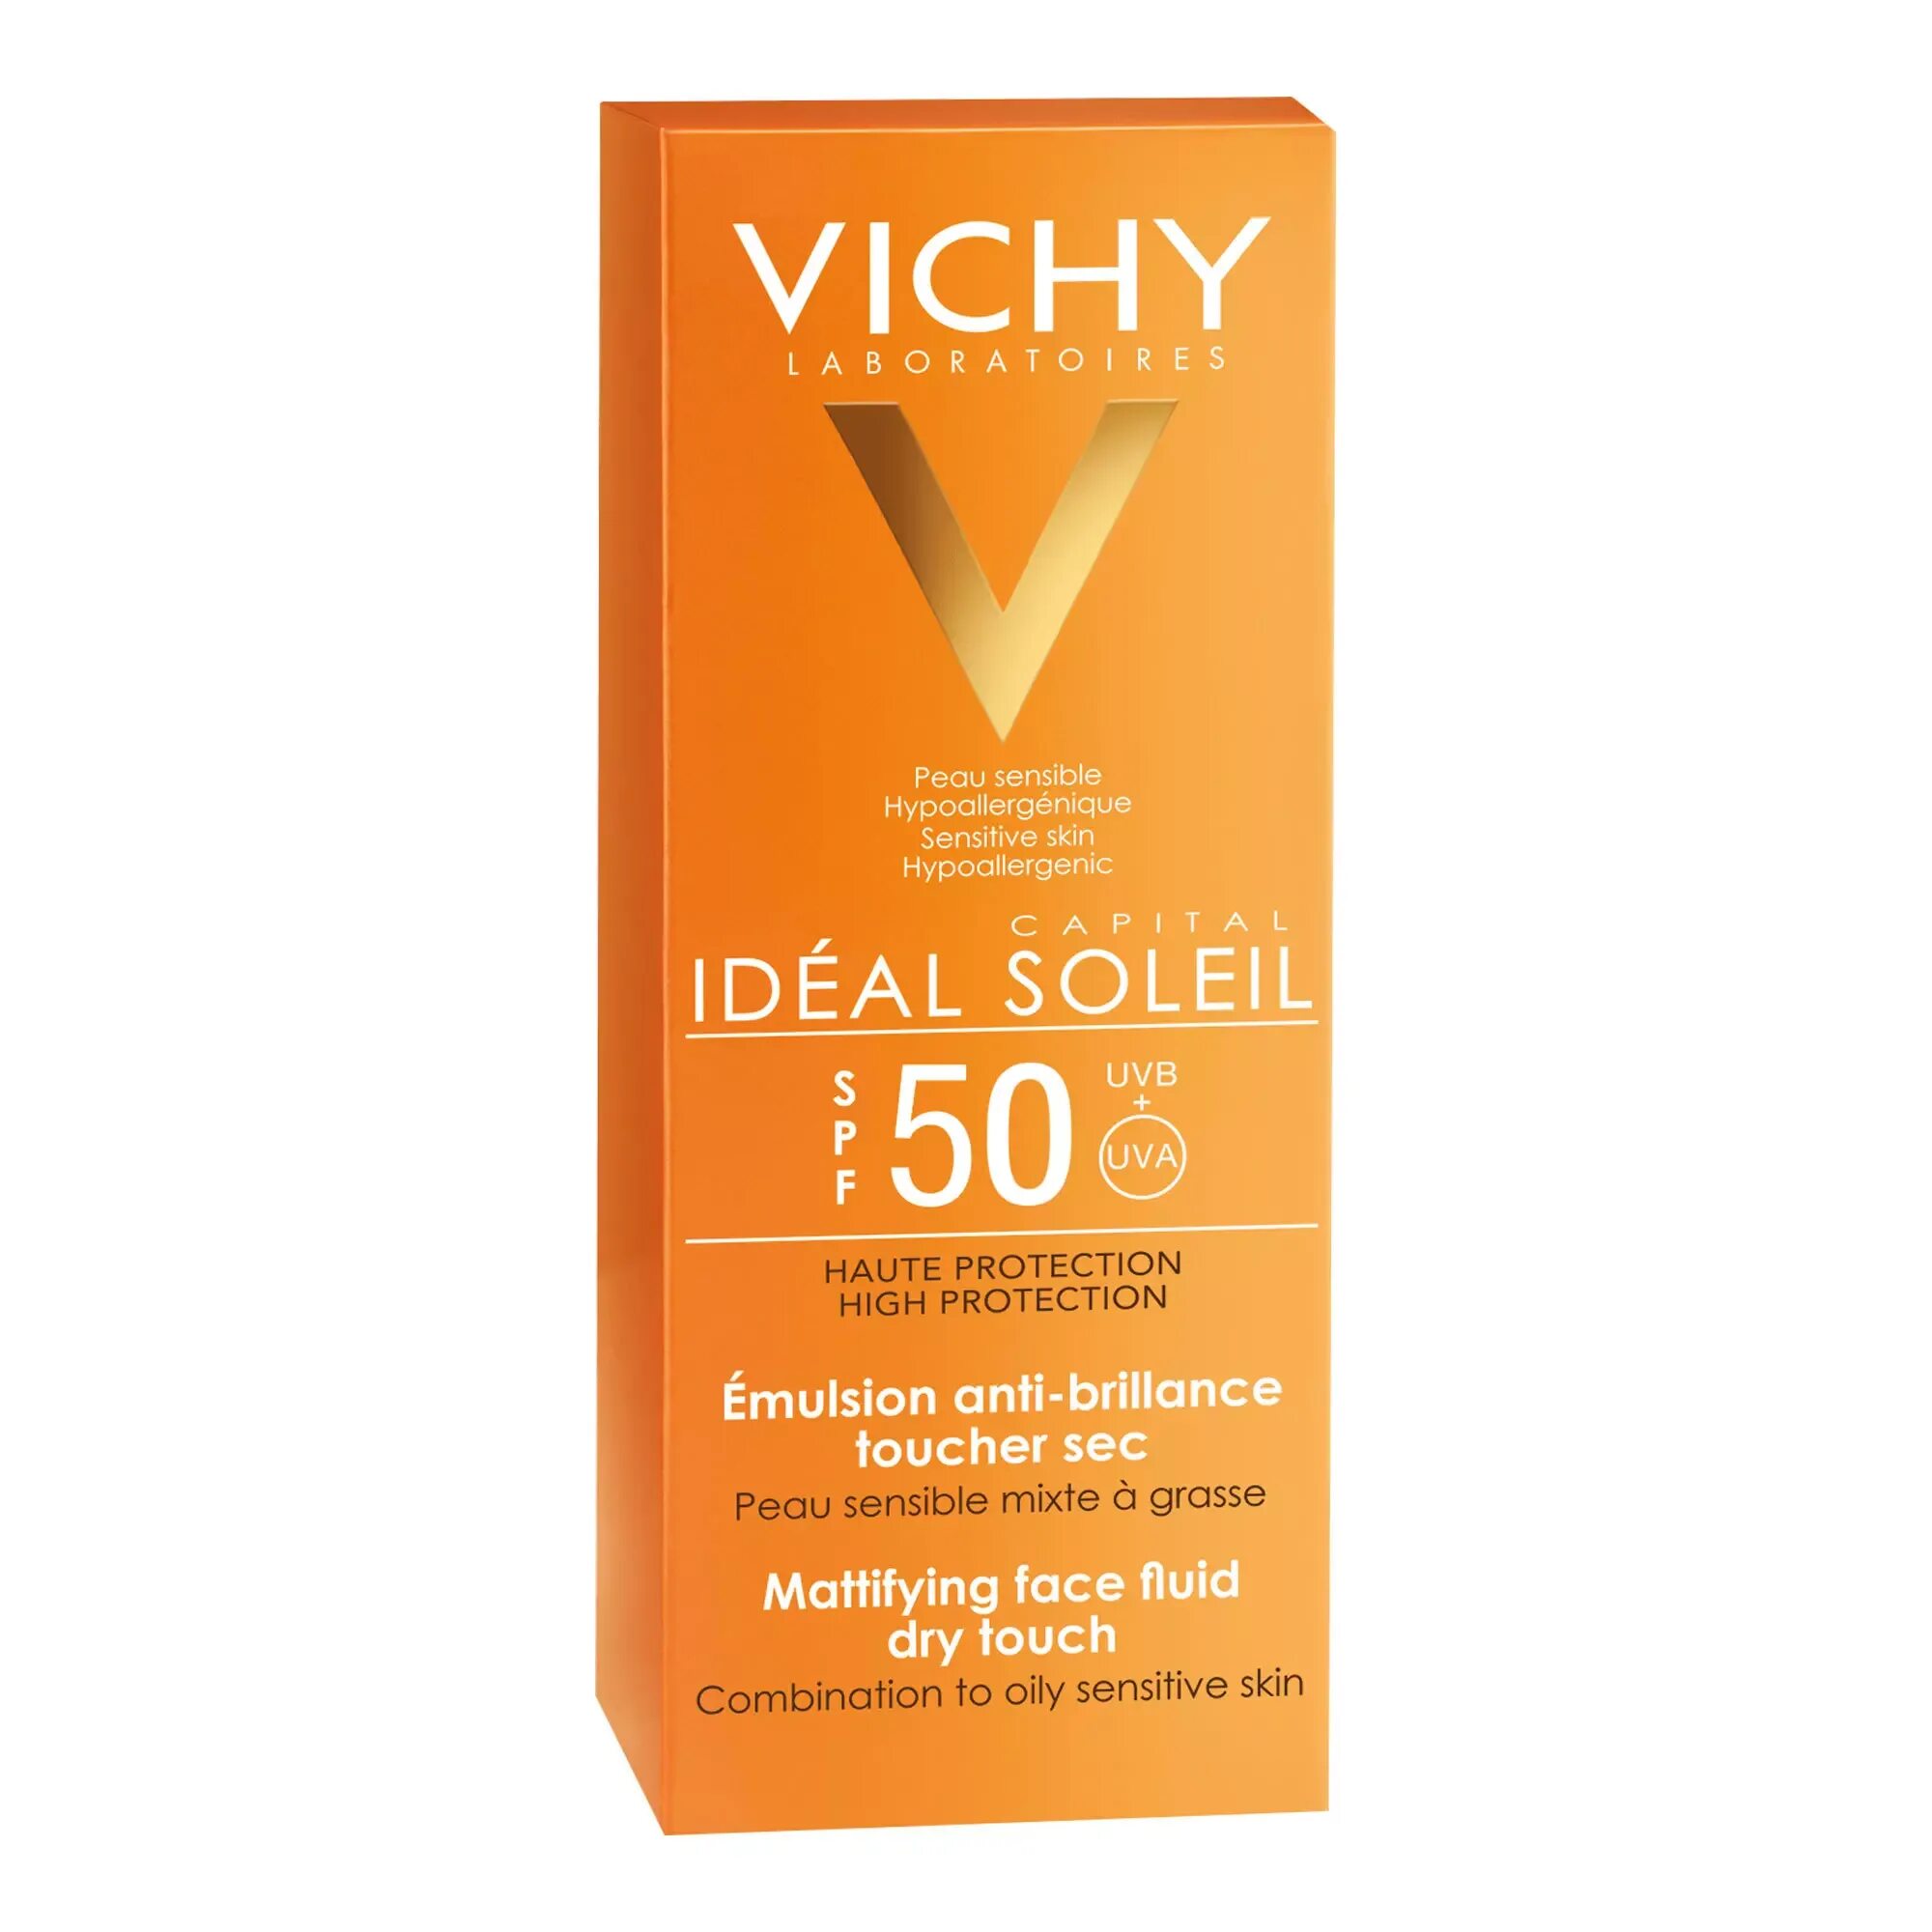 Capital soleil 50 мл. Виши СПФ 50 для лица. Vichy ideal Soleil 50 крем. Vichy Capital Soleil Fluid SPF 50. Vichy Capital Soleil SPF 50 для лица.